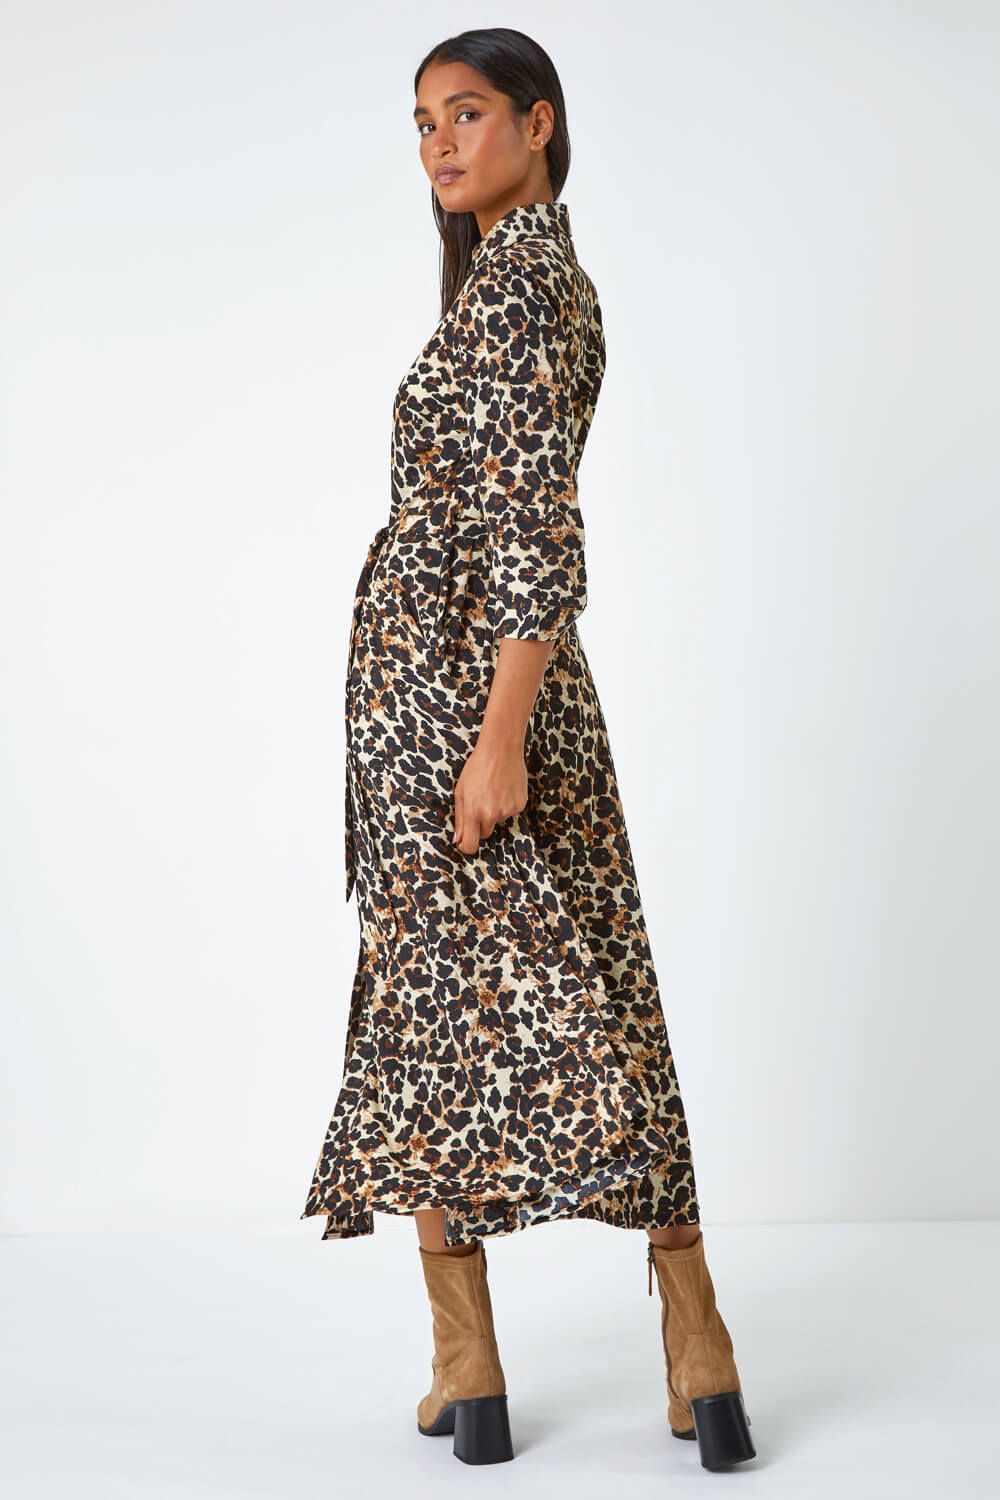 Beige Leopard Print Belted Shirt Dress, Image 3 of 5